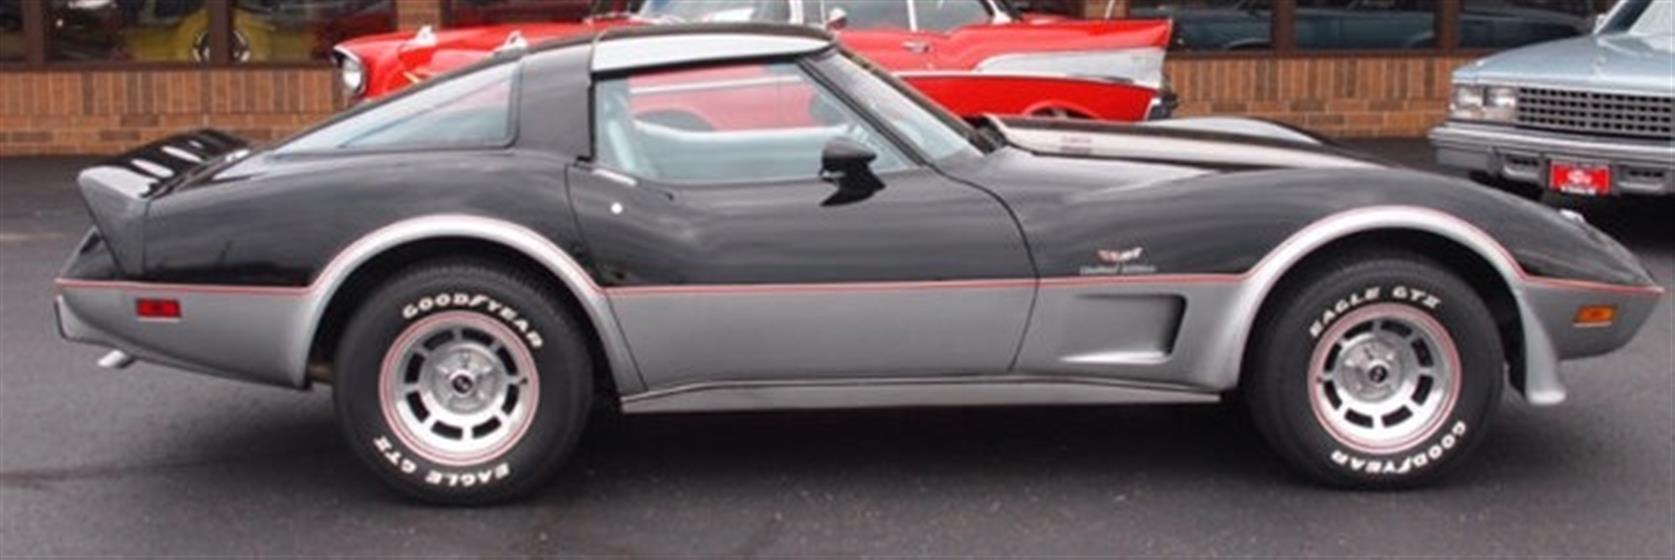 1978 Chevrolet Corvette Pace Car $31,000 